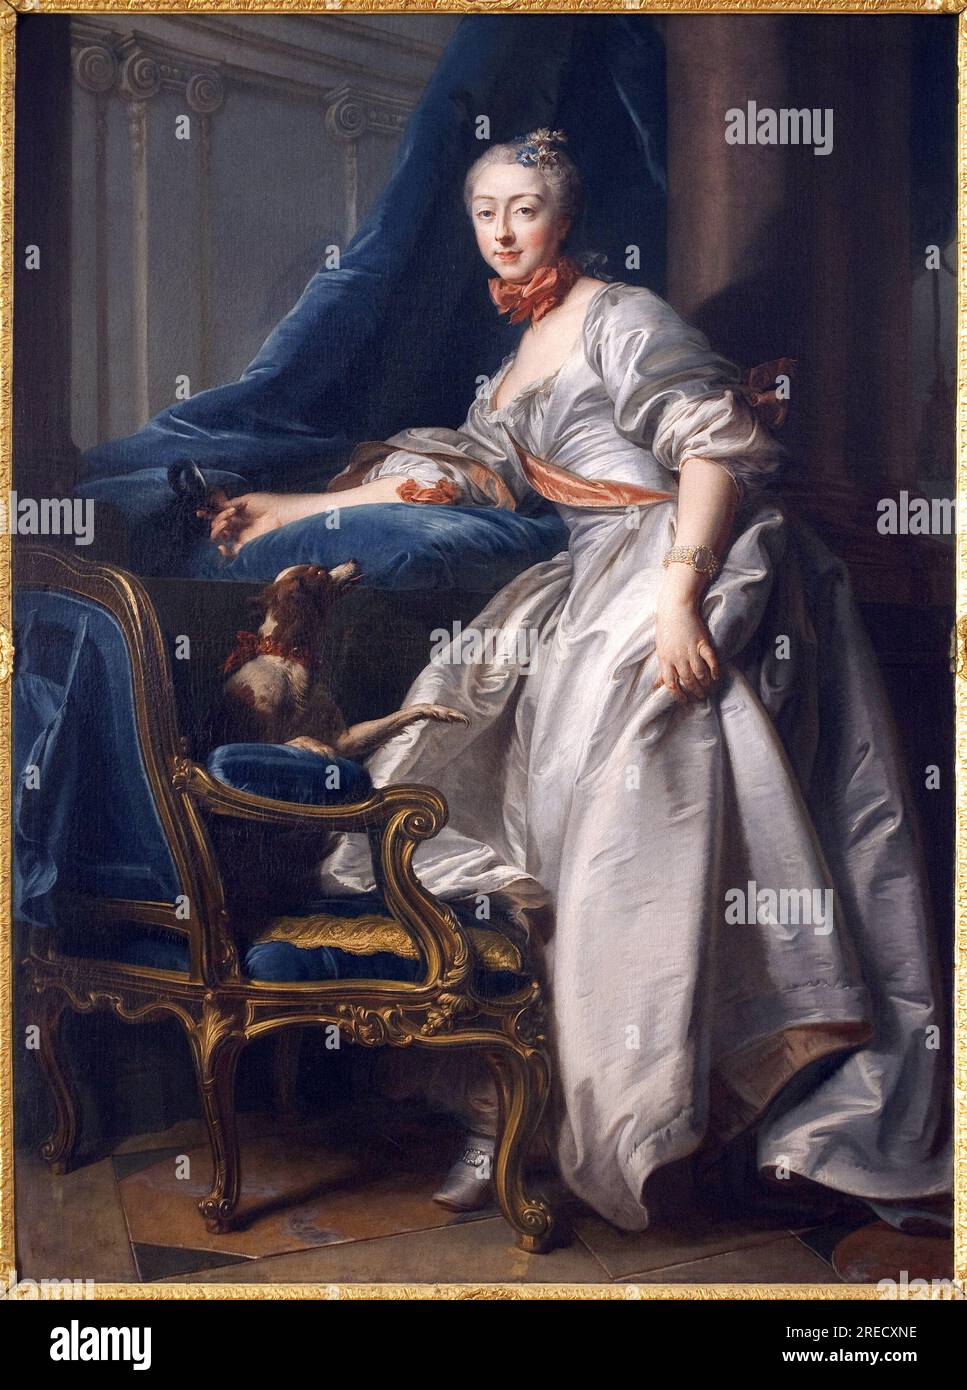 Portrait de Marie Anne de Montboisier Beaufort Canillac, Marquise de Caumont. Peinture de Jean Valade (1709-1787), huile sur toile, 1756. Art francais 18e Siecle. Musée des Beaux Arts de Avignon. Stockfoto